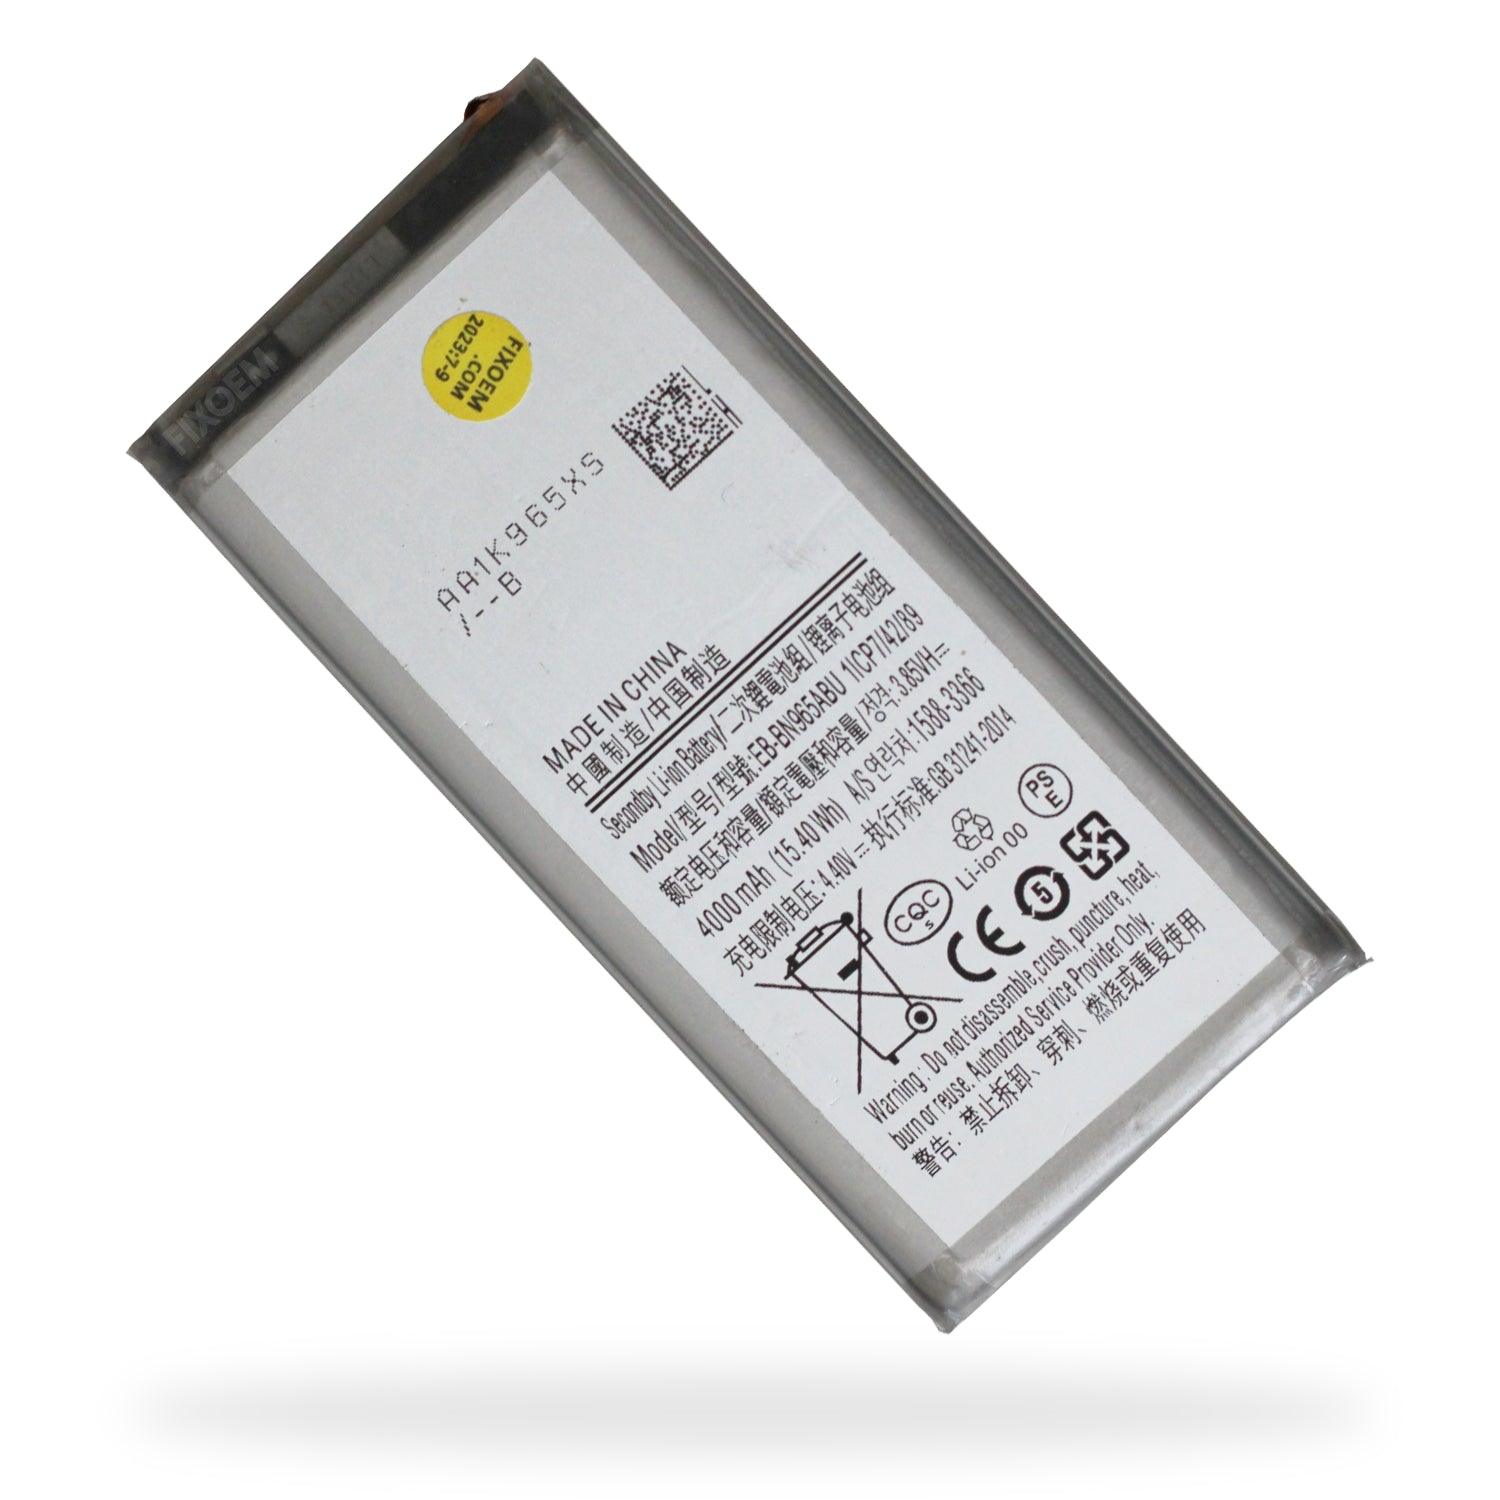 Bateria Samsung Note 9 Sm-N9600 Eb-Bn965Abu. a solo $ 140.00 Refaccion y puestos celulares, refurbish y microelectronica.- FixOEM